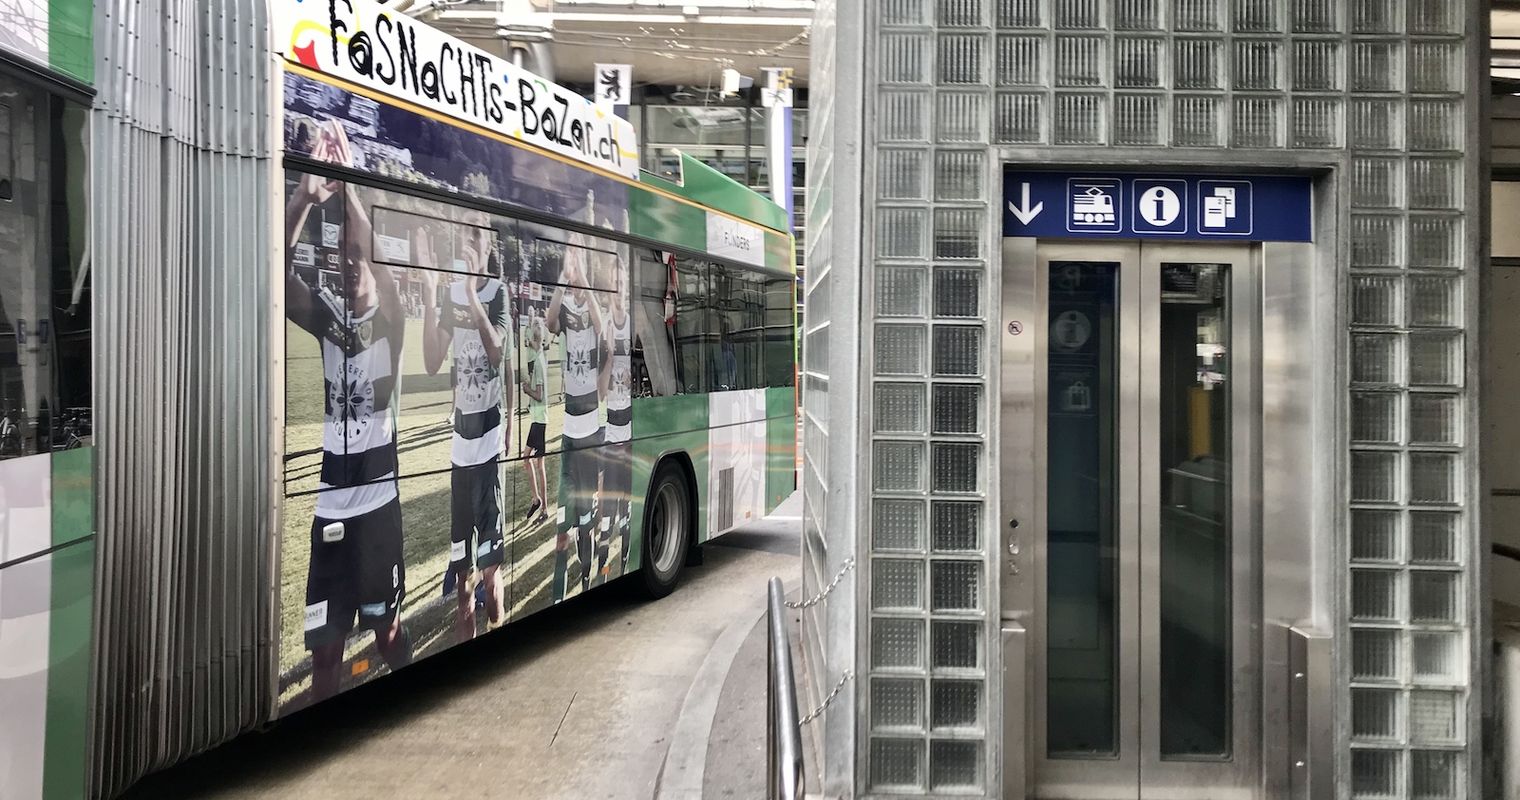 Touristin zwischen Bus und Wand gequetscht: War der Chauffeur schuld?